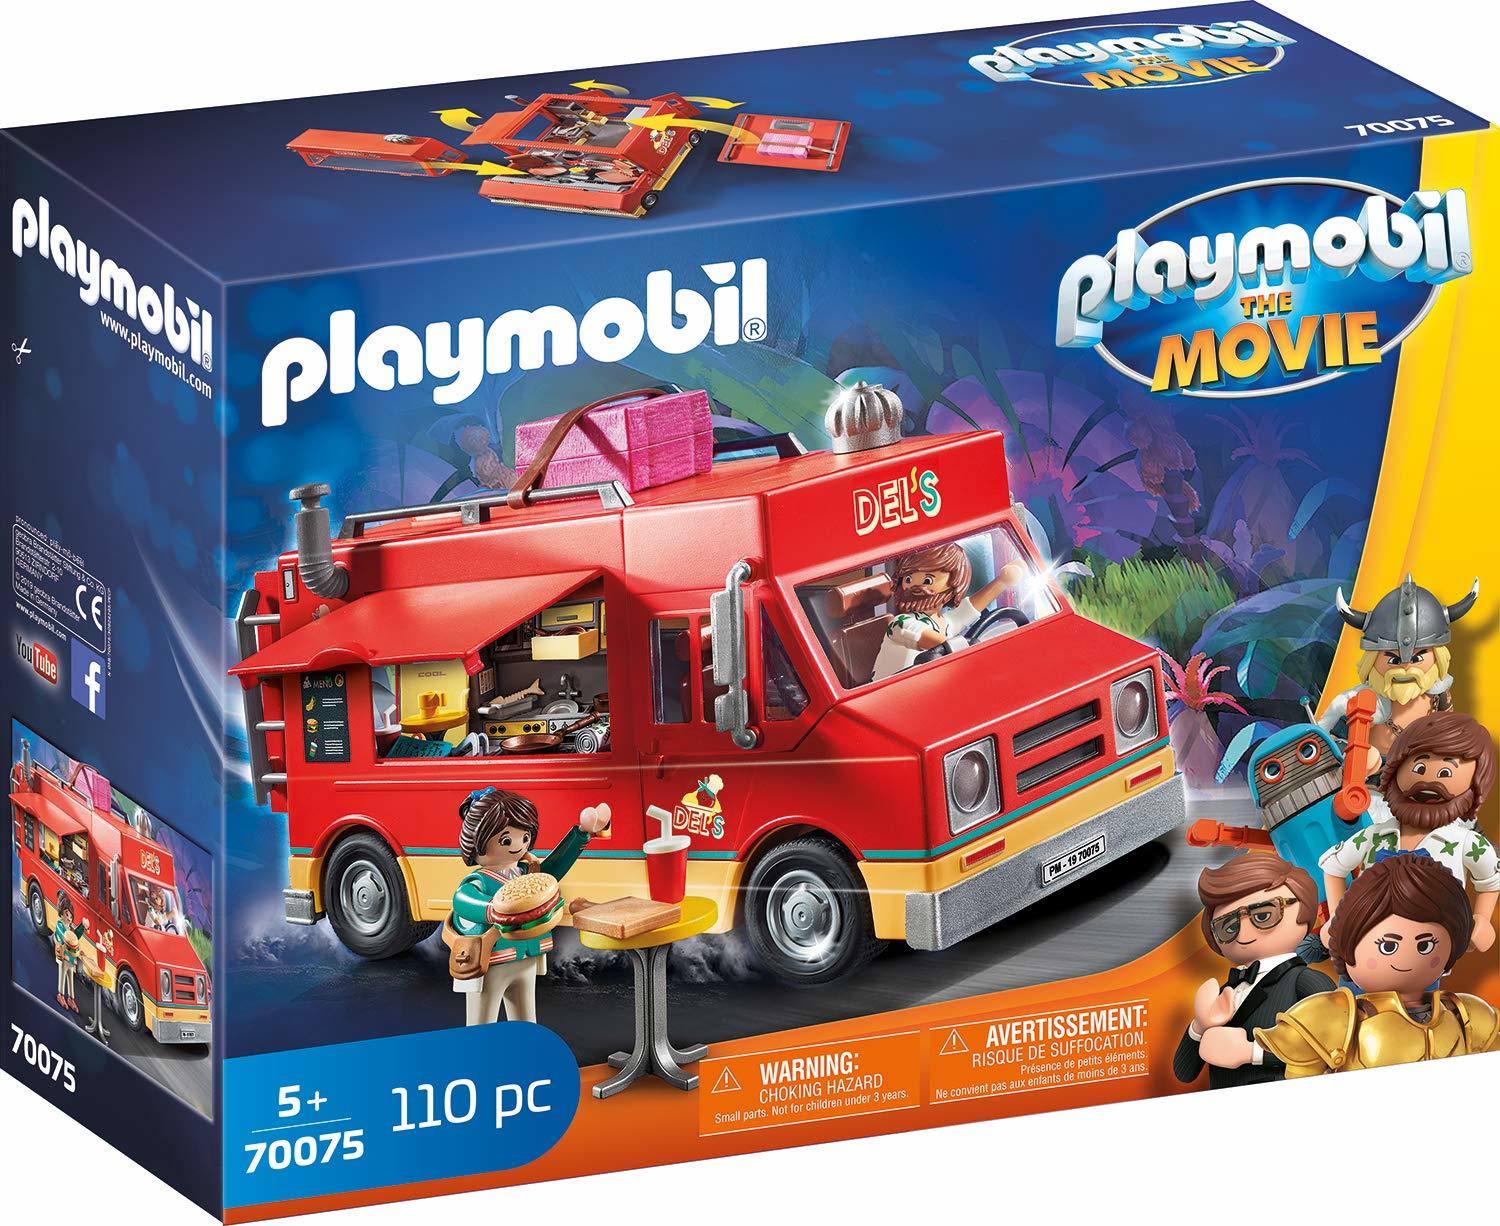 Playmobil: The Movie Food